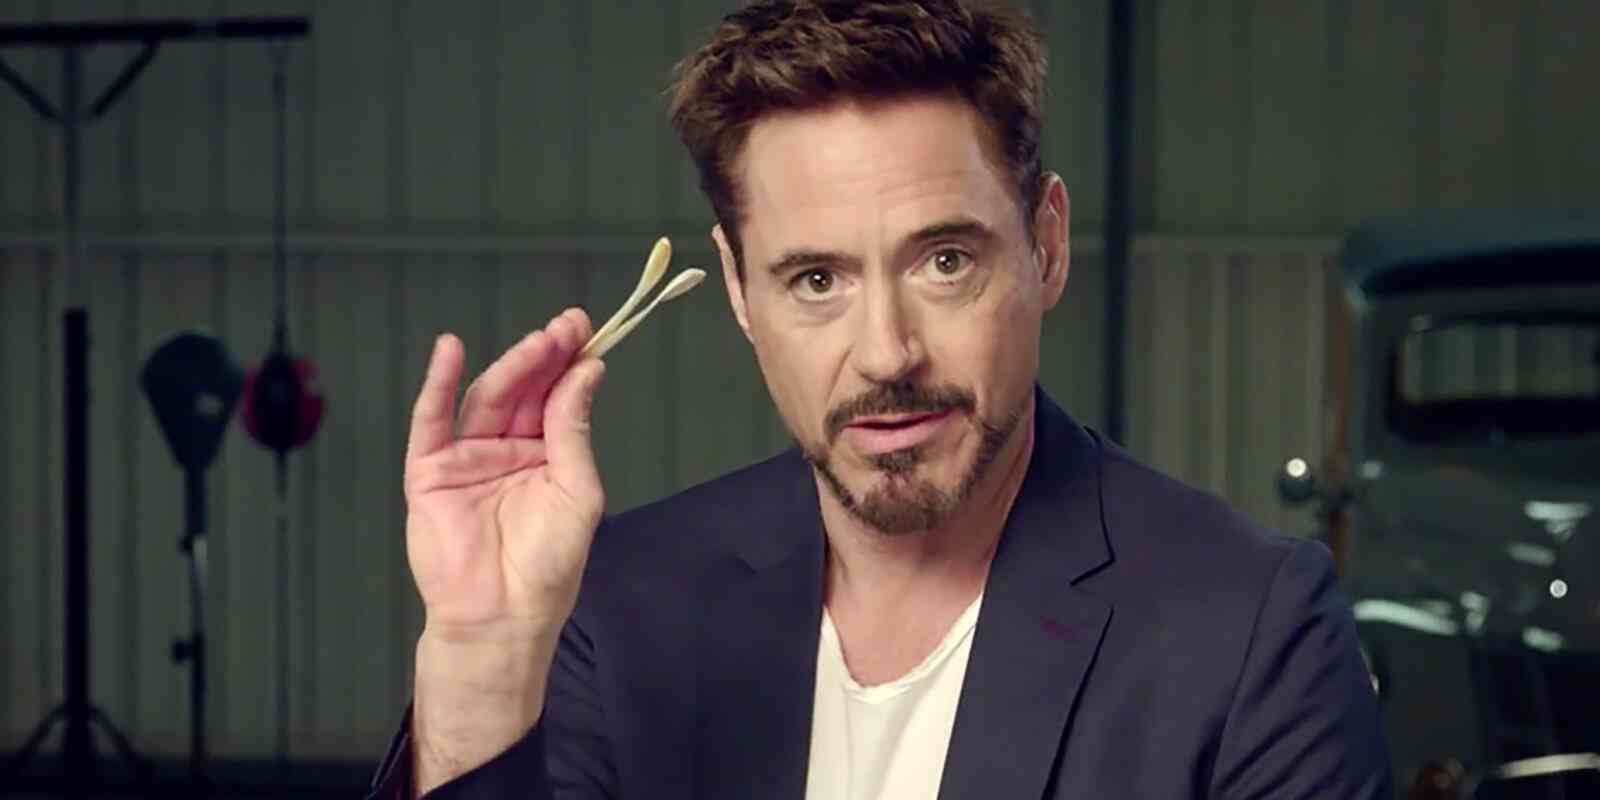 Robert Downey Jr deixa de seguir colegas da Marvel e fãs cobram explicação